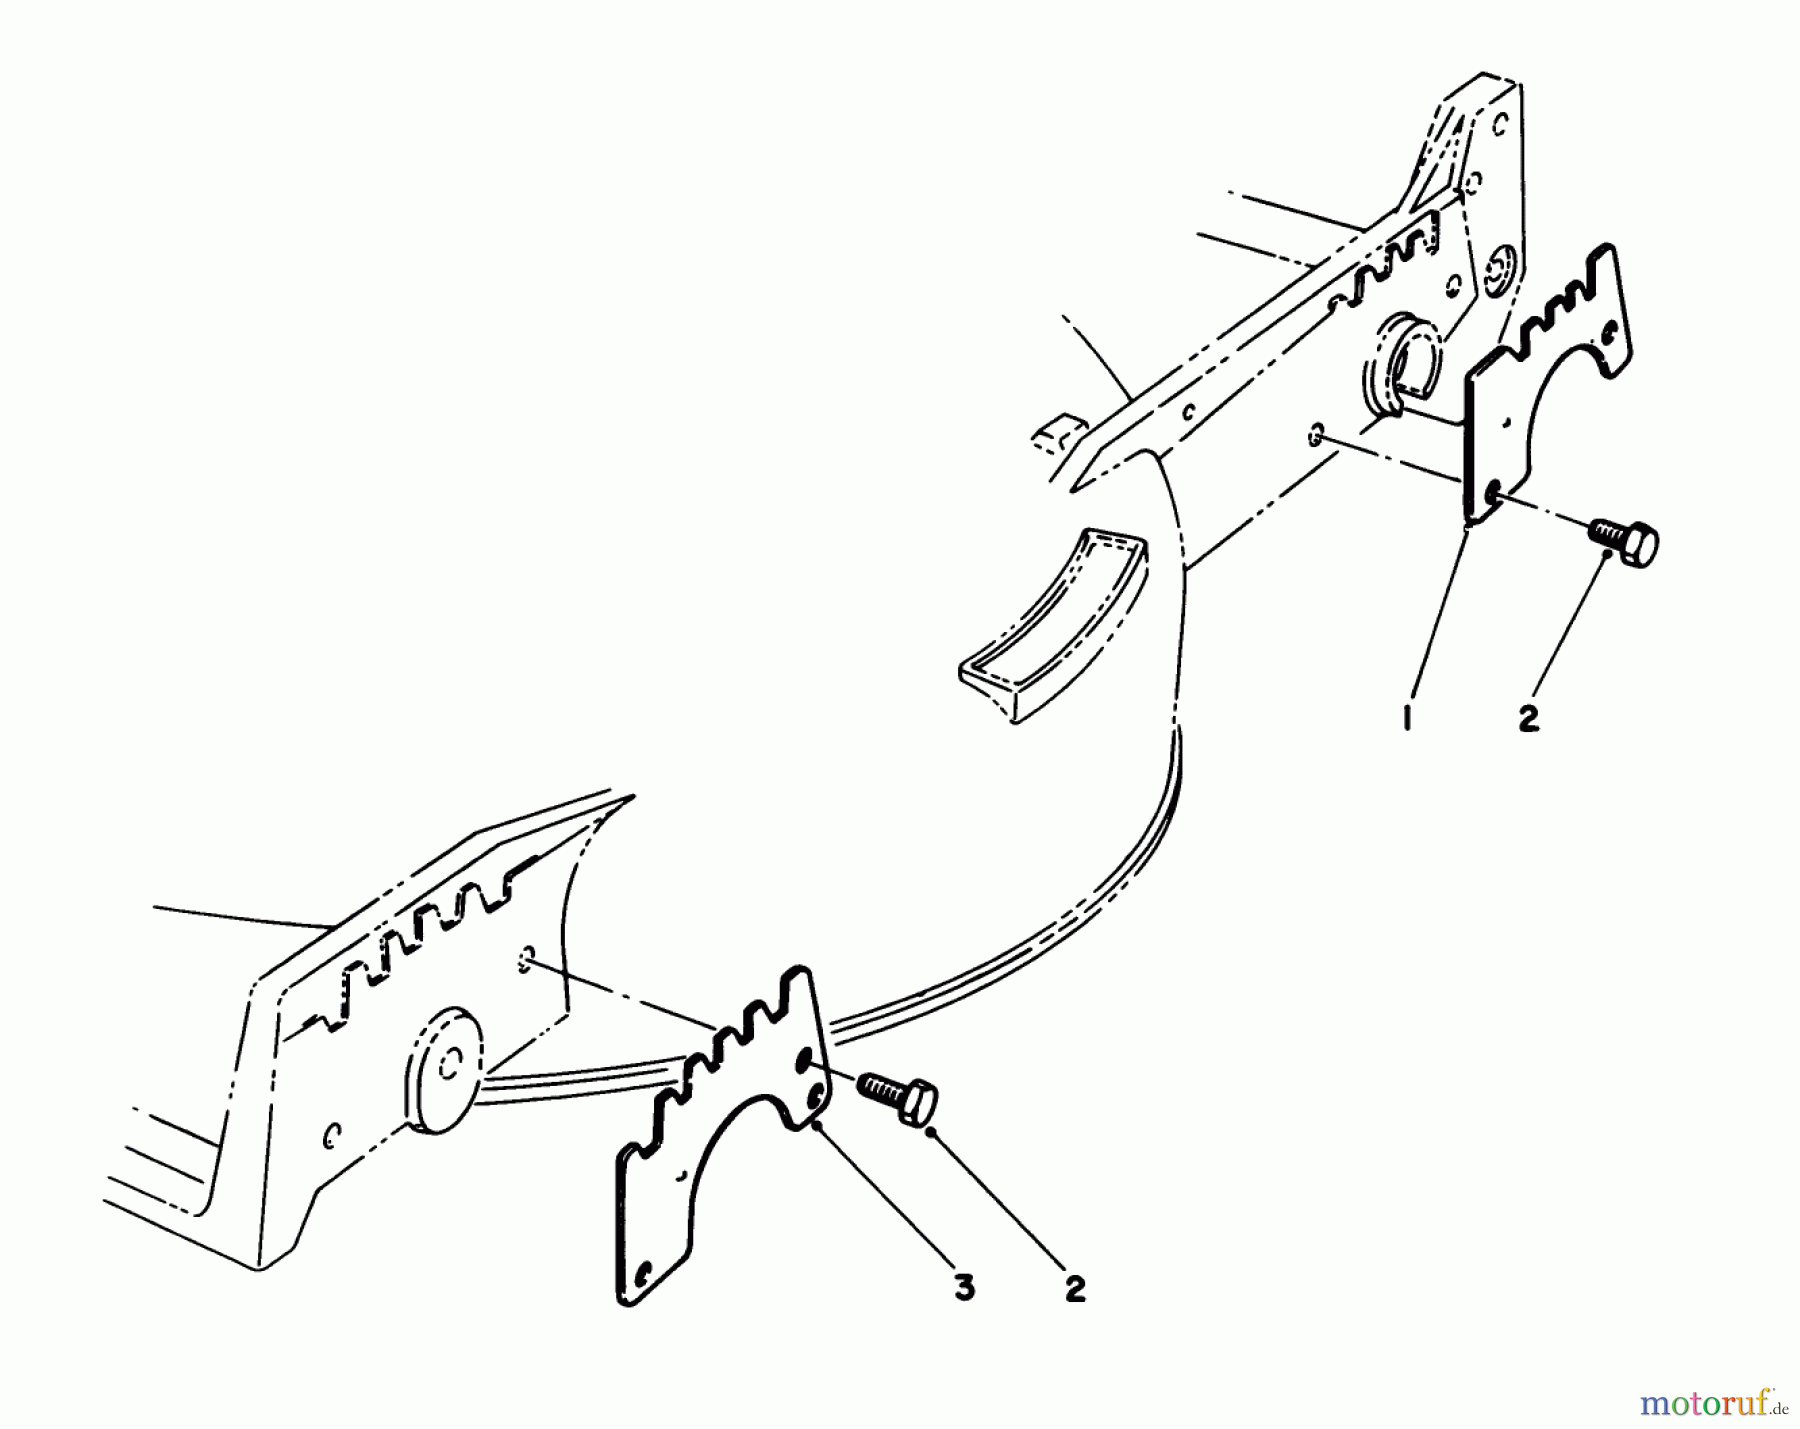  Toro Neu Mowers, Walk-Behind Seite 1 20627C - Toro Lawnmower, 1986 (6000001-6999999) WEAR PLATE KIT NO. 49-4080 (OPTIONAL)